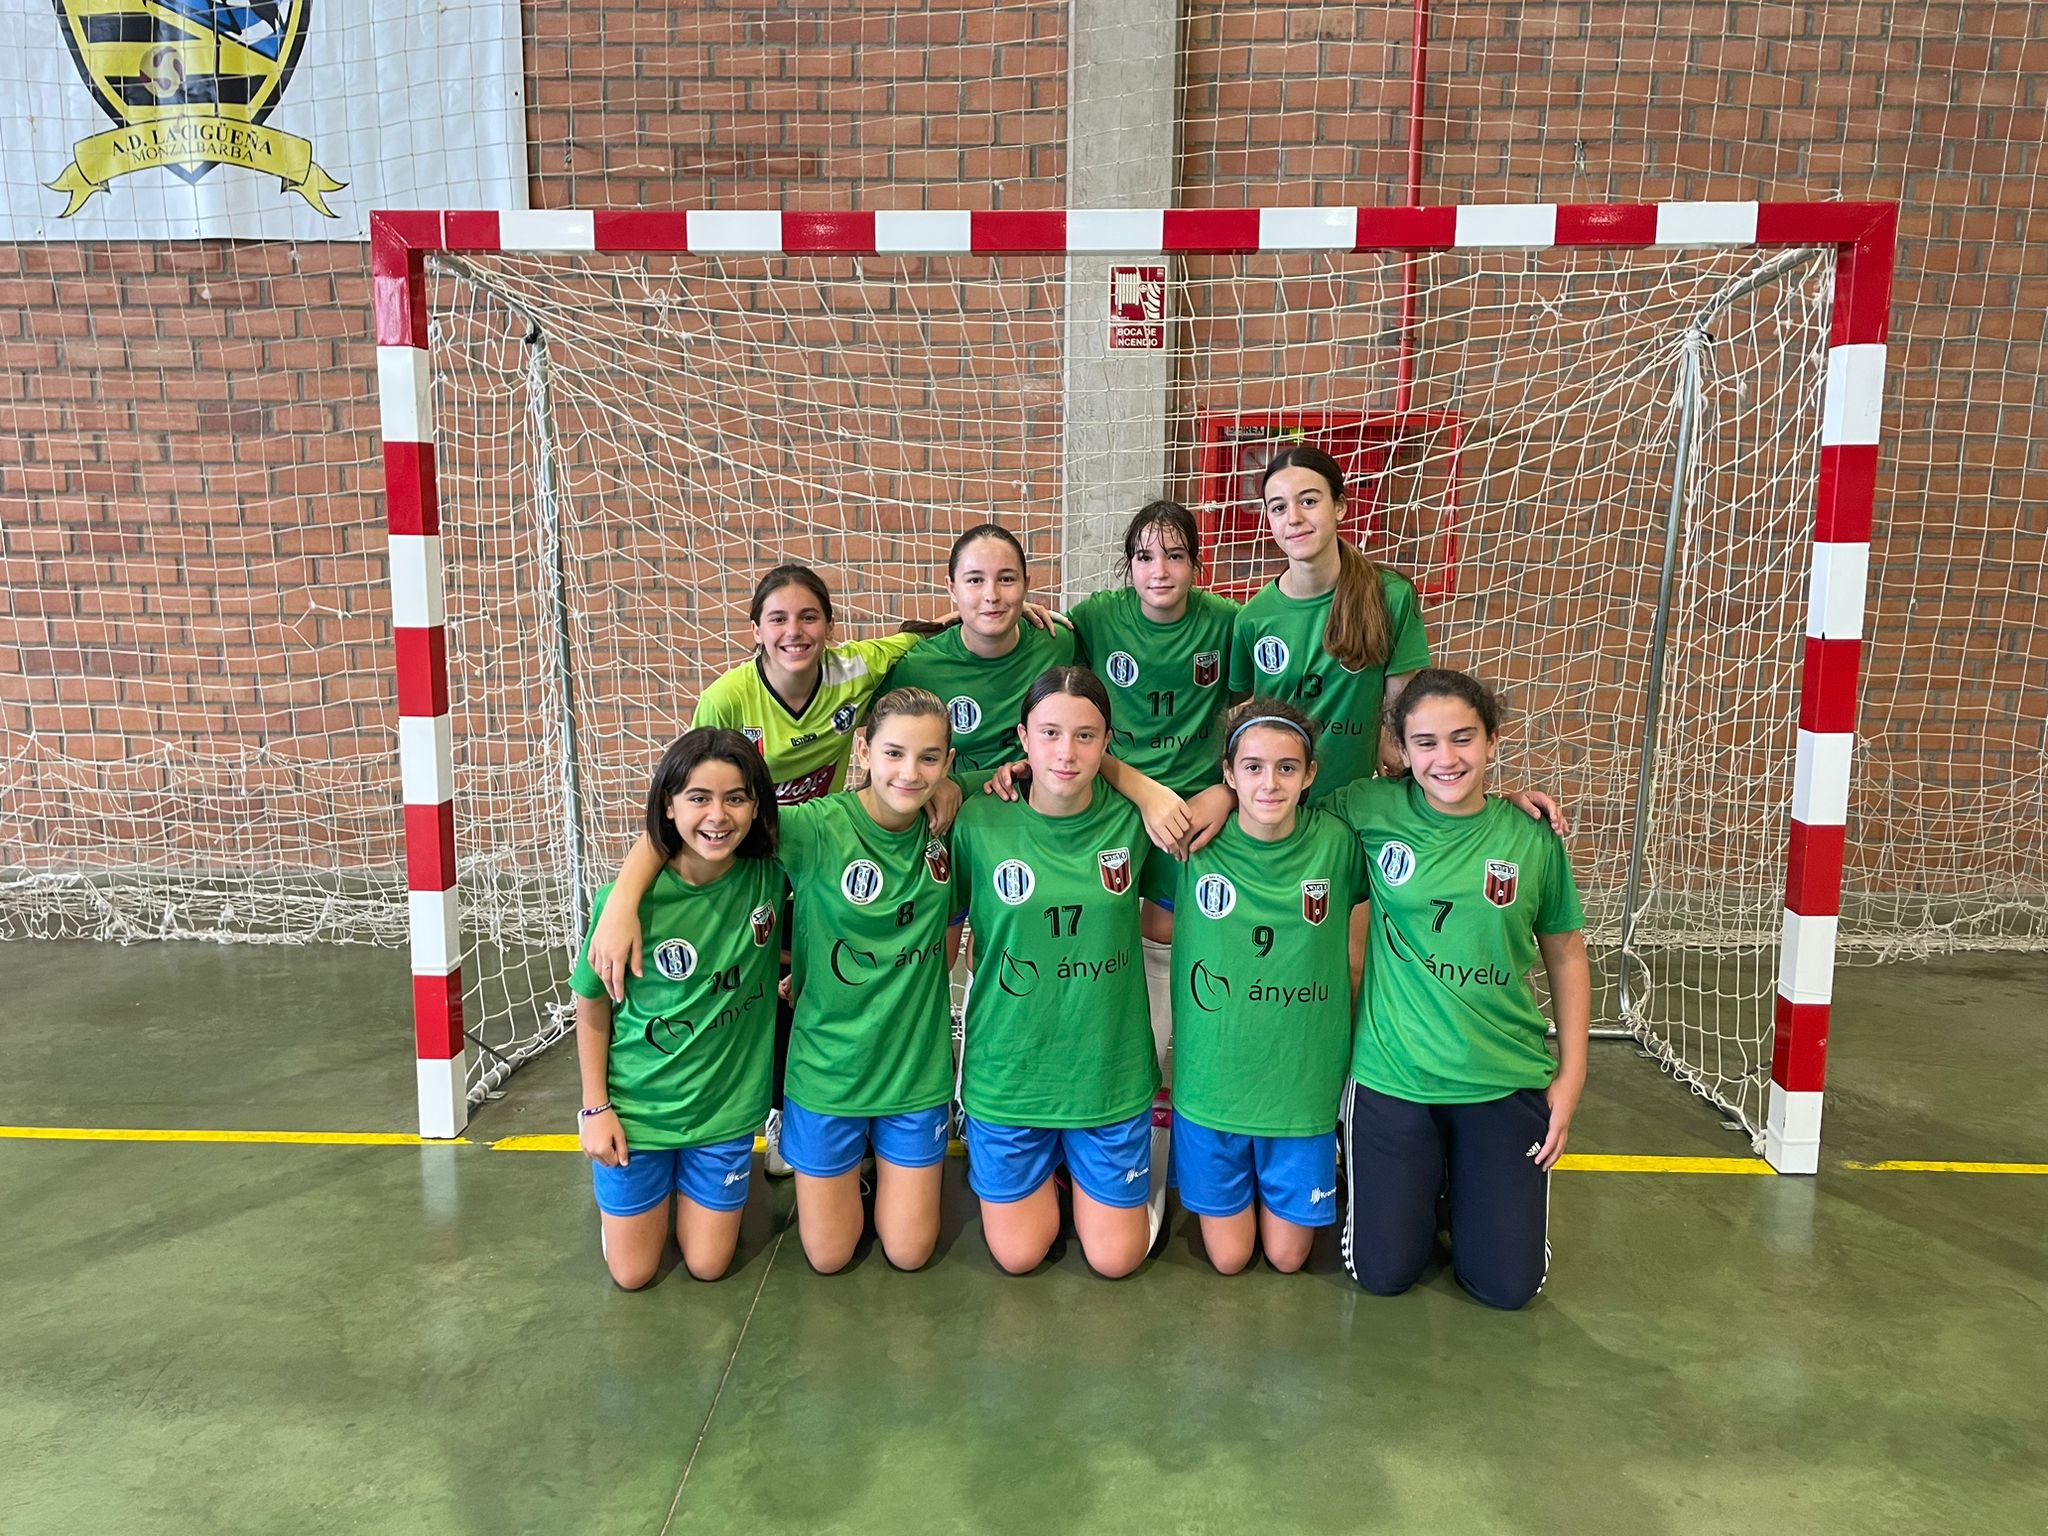 La Cigüeña 2-2 Aldelis InterSala 10 Zaragoza (Infantil femenino) – Jornada 3